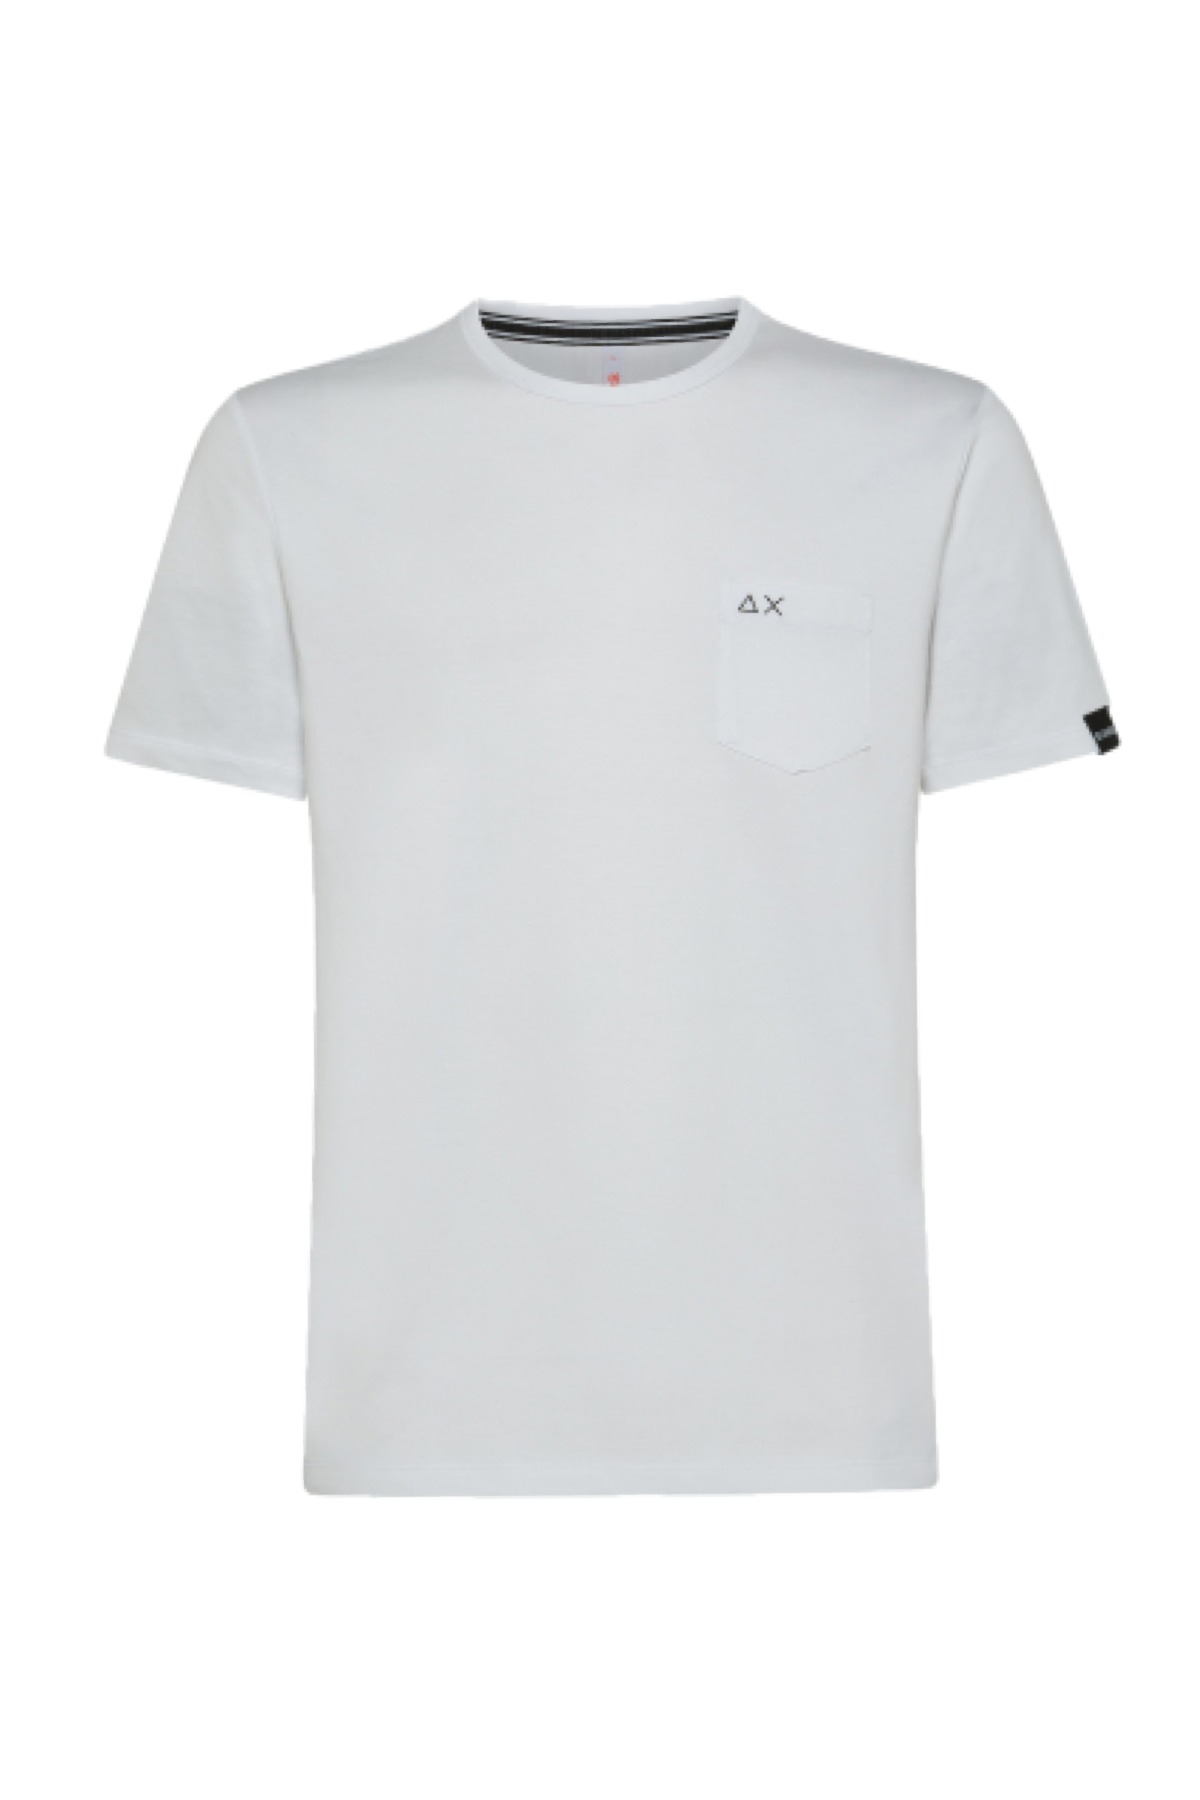 Sun68 t-shirt bianco 33125